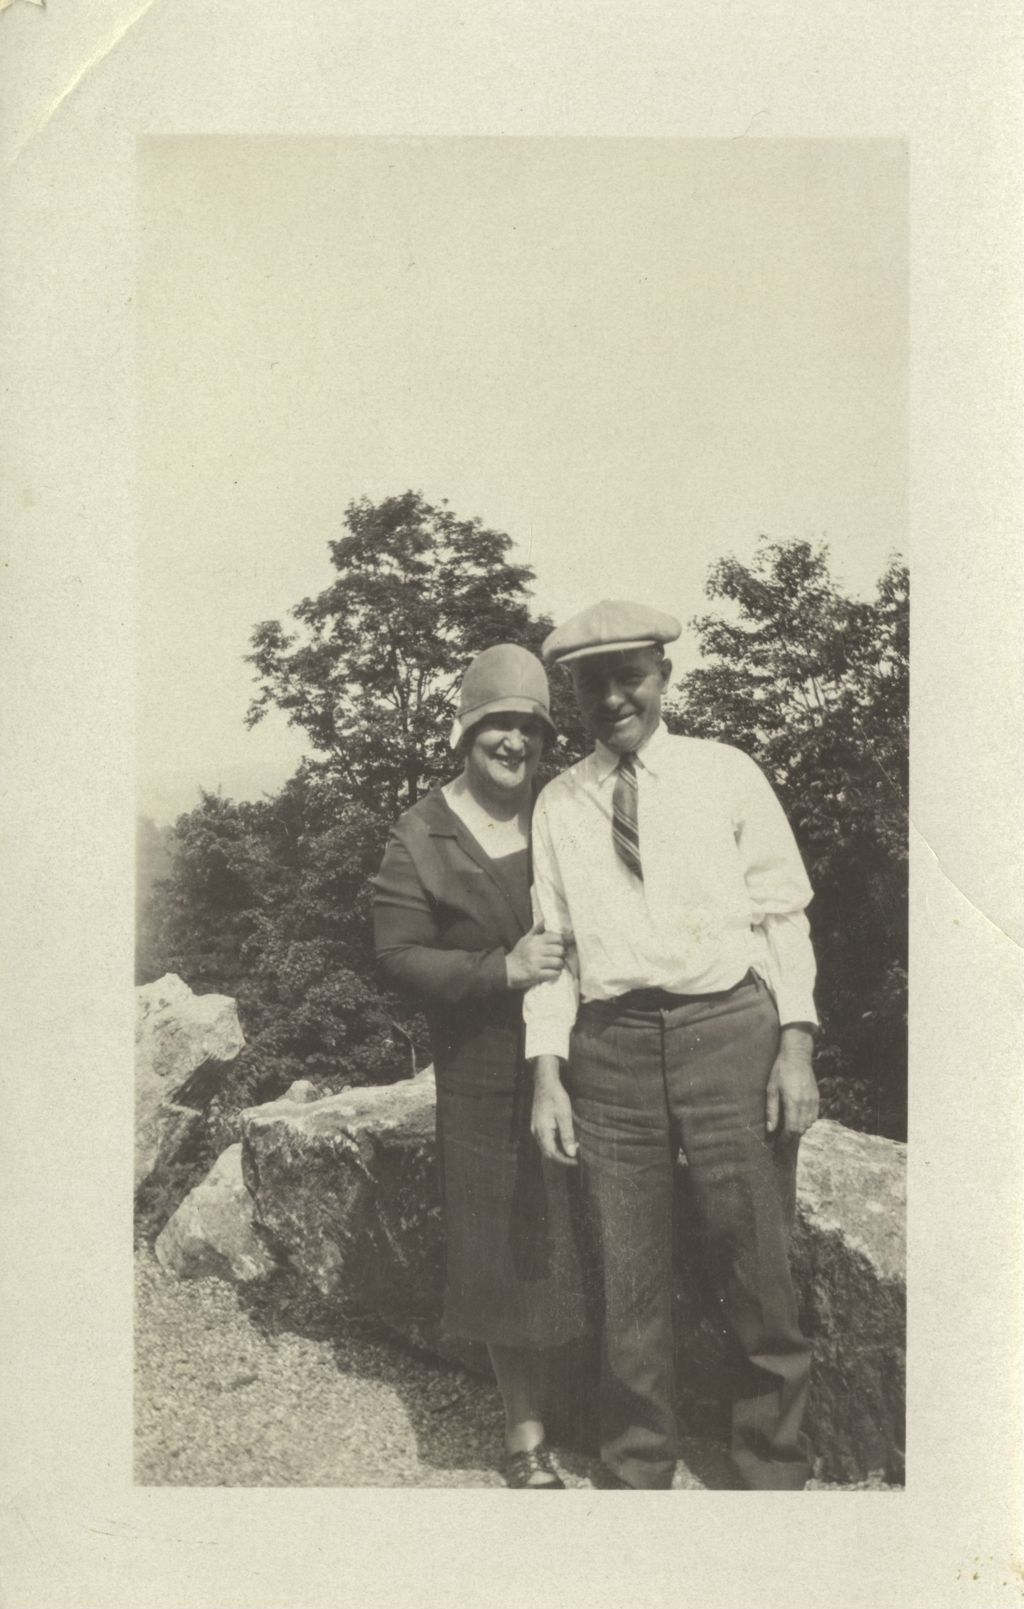 Richard J. Daley's parents